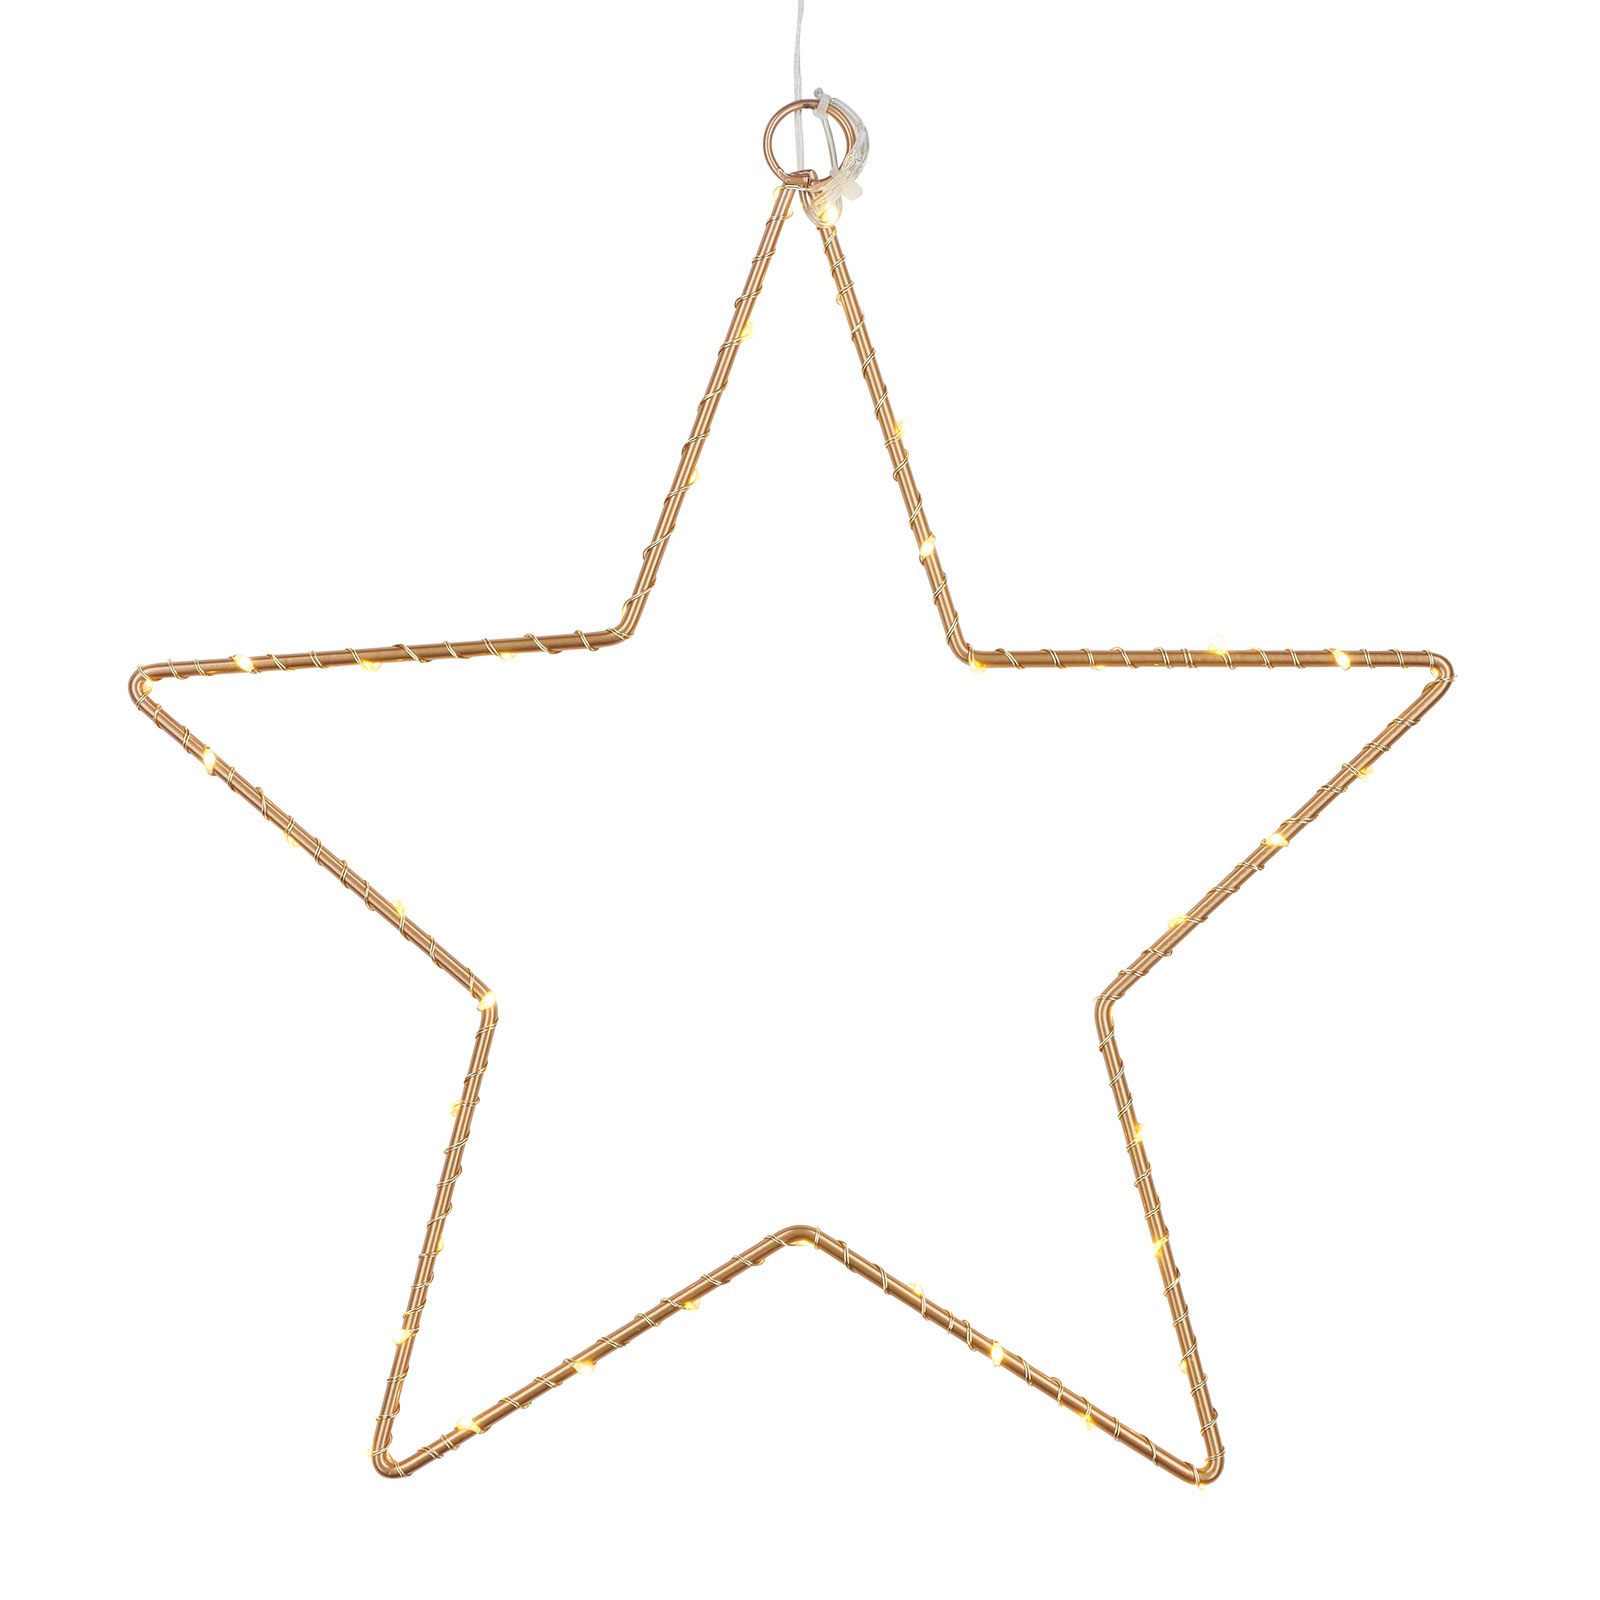 LED Star decorativo Liva Star, dourado, Ø 30 cm